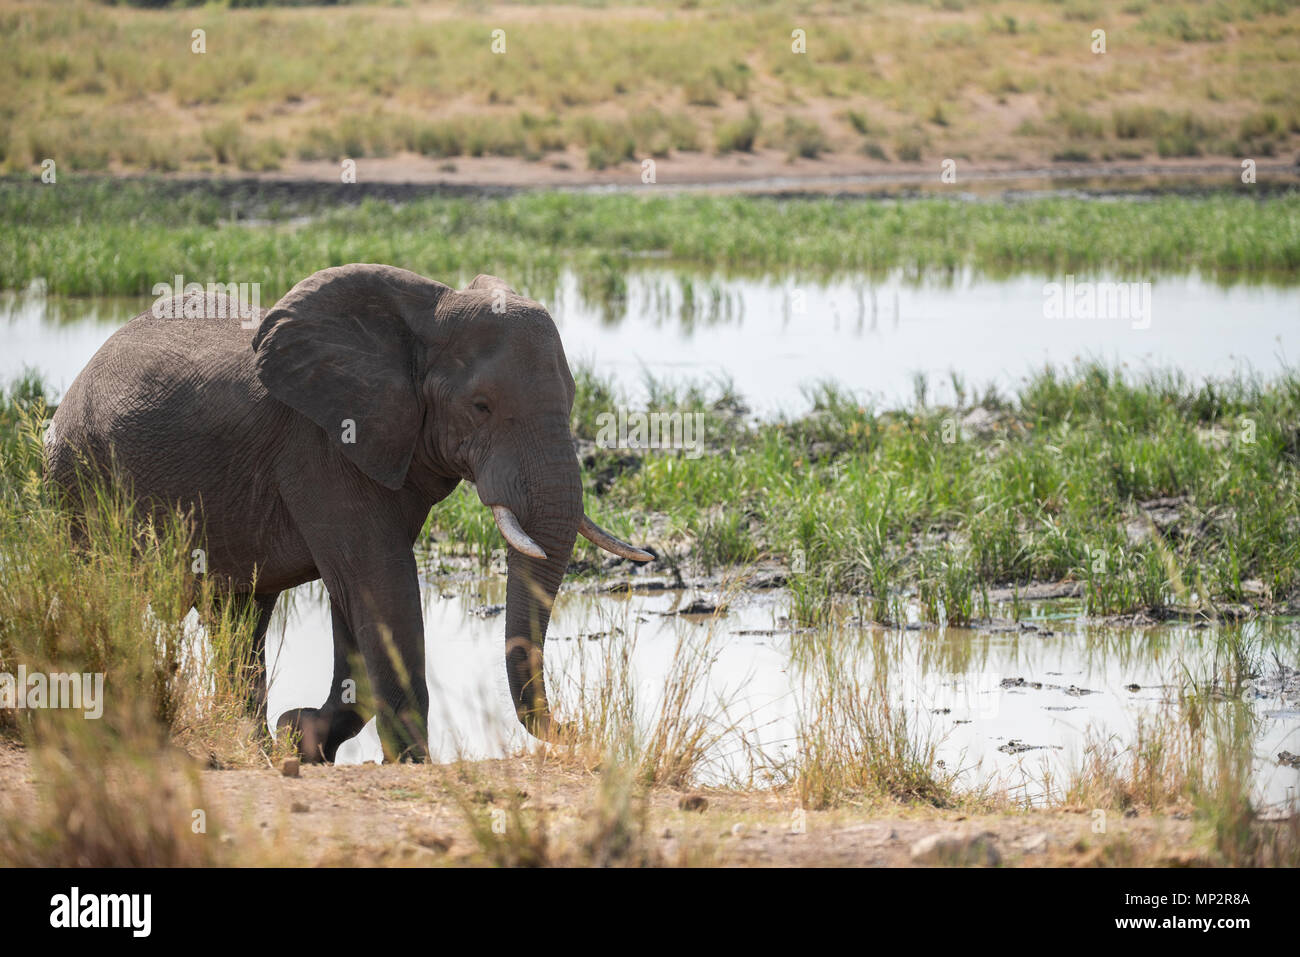 Bull un éléphant marchant à côté d'une casserole d'eau Banque D'Images